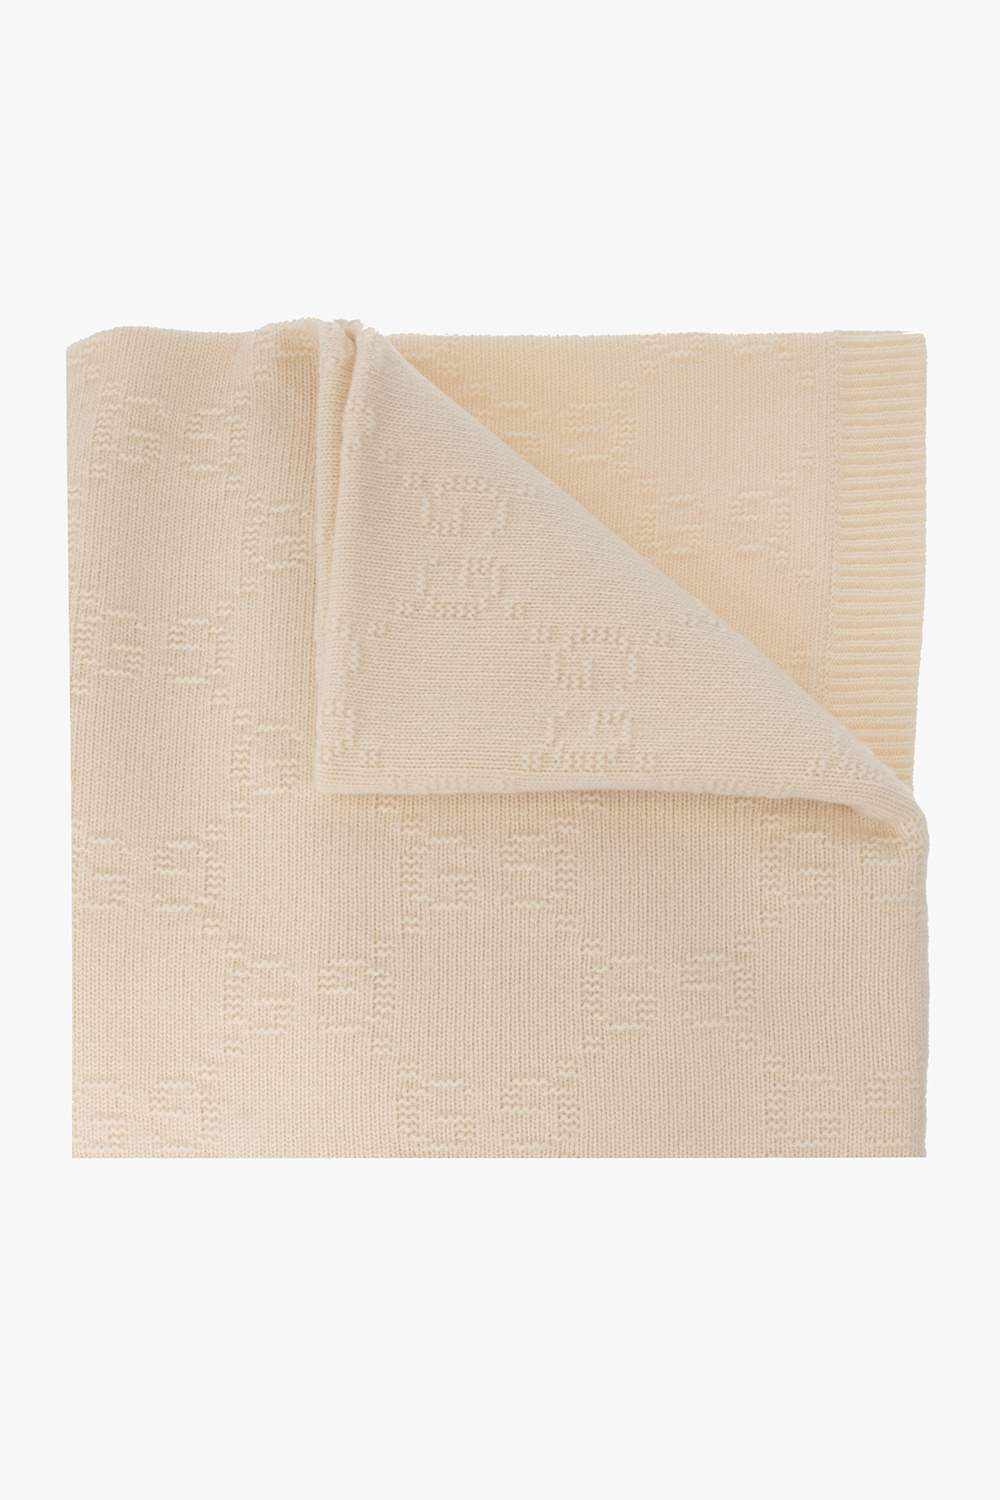 FIND] Blankets w/ Designs (Louis Vuitton, Supreme, Gucci